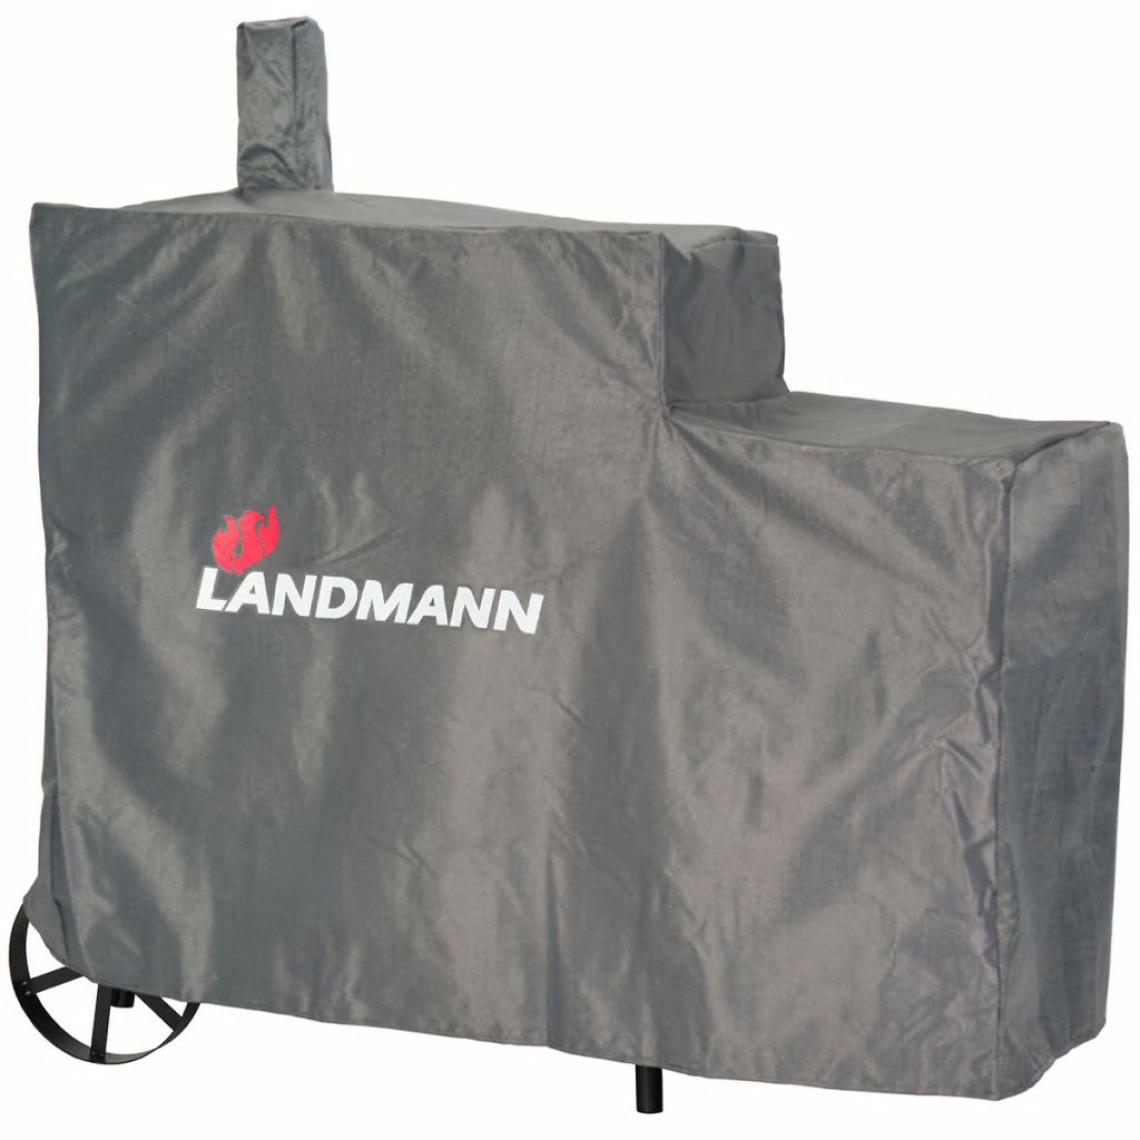 Landmann - Landmann Housse de barbecue Premium XL 140x65x114 cm Gris - Accessoires barbecue